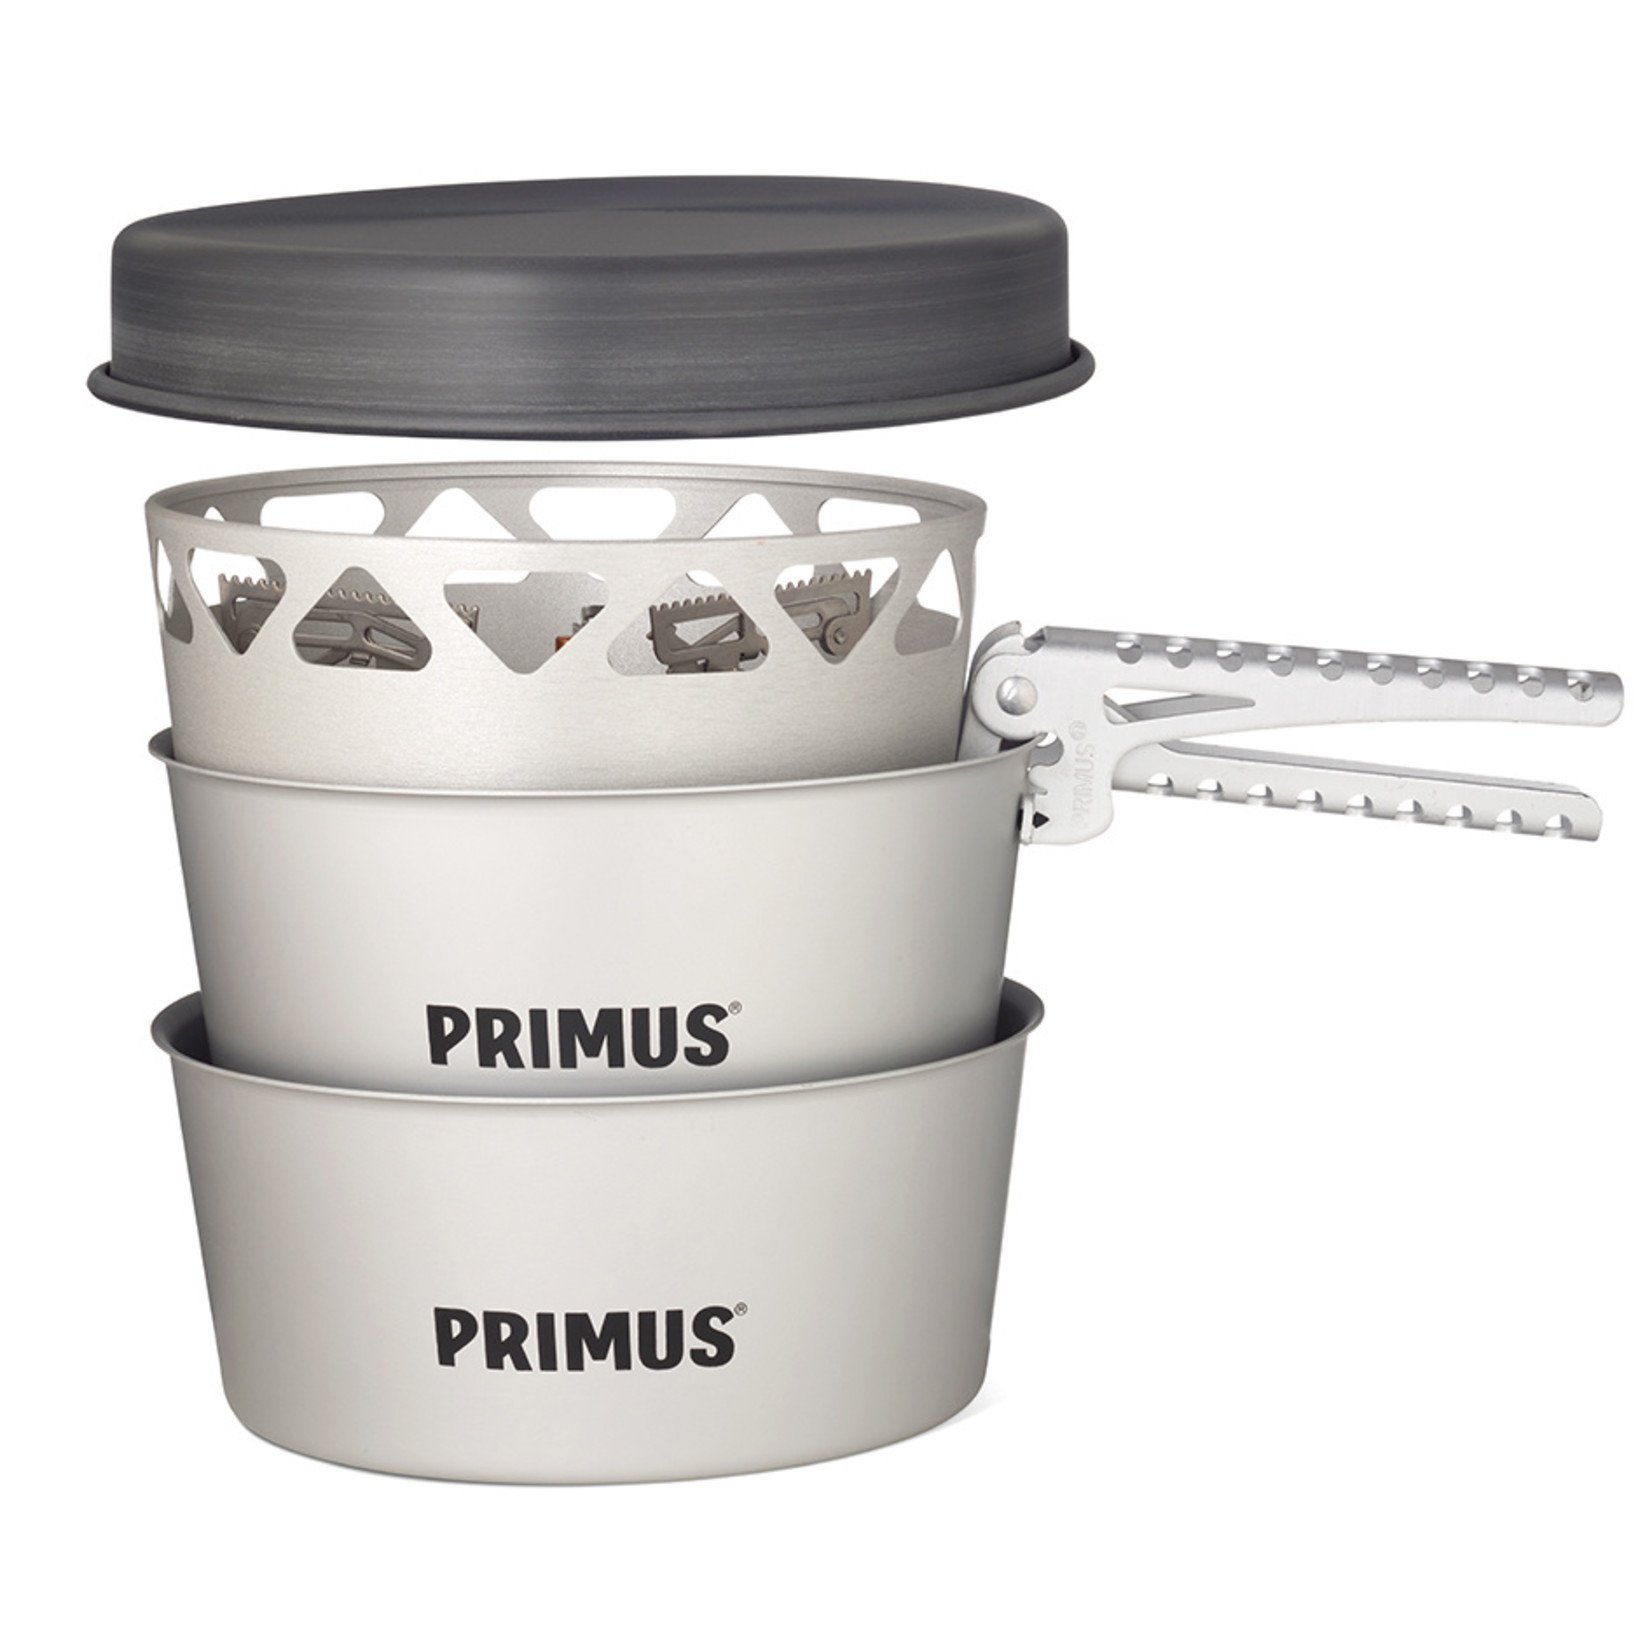 Primus Primus Essential stove set 2,3 liter, PTFE-antiaanbaklaag